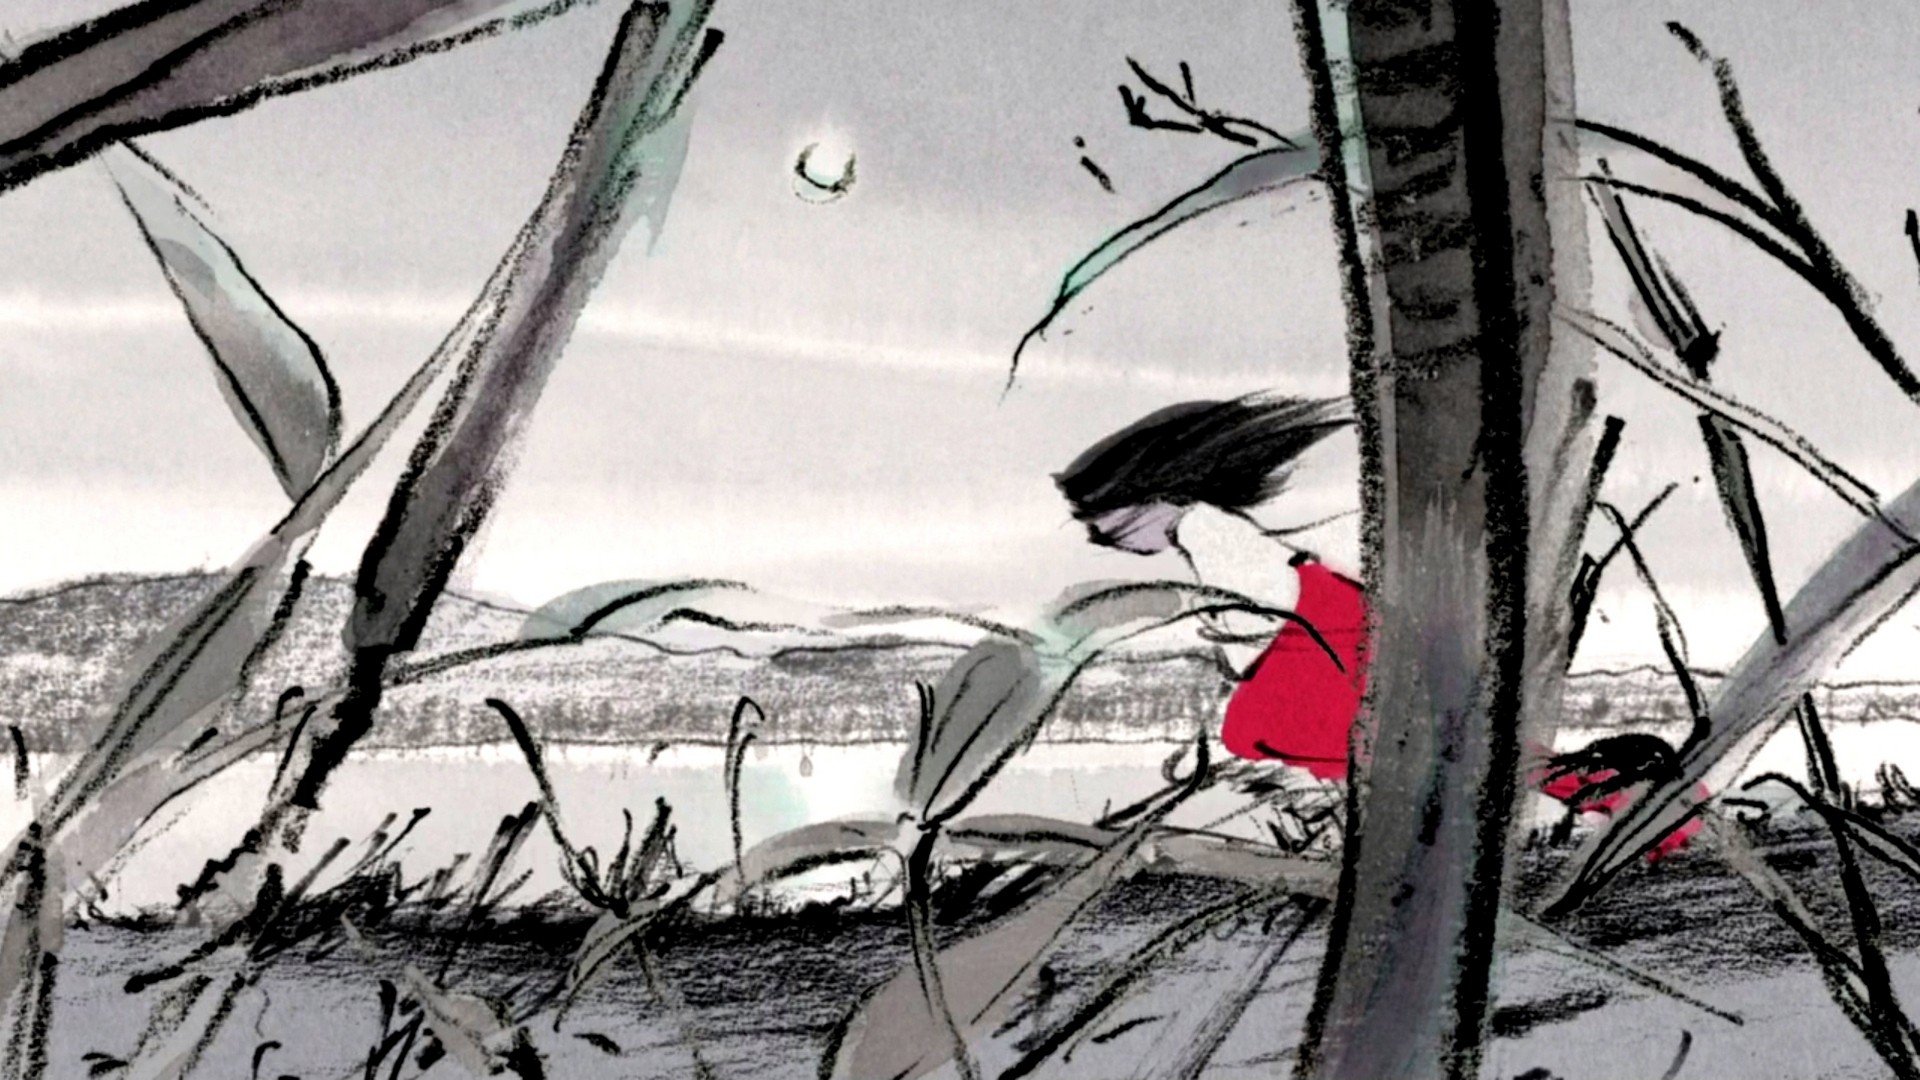 The Tale of Princess Kaguya, Princess, Kaguya, Animated movies Wallpaper